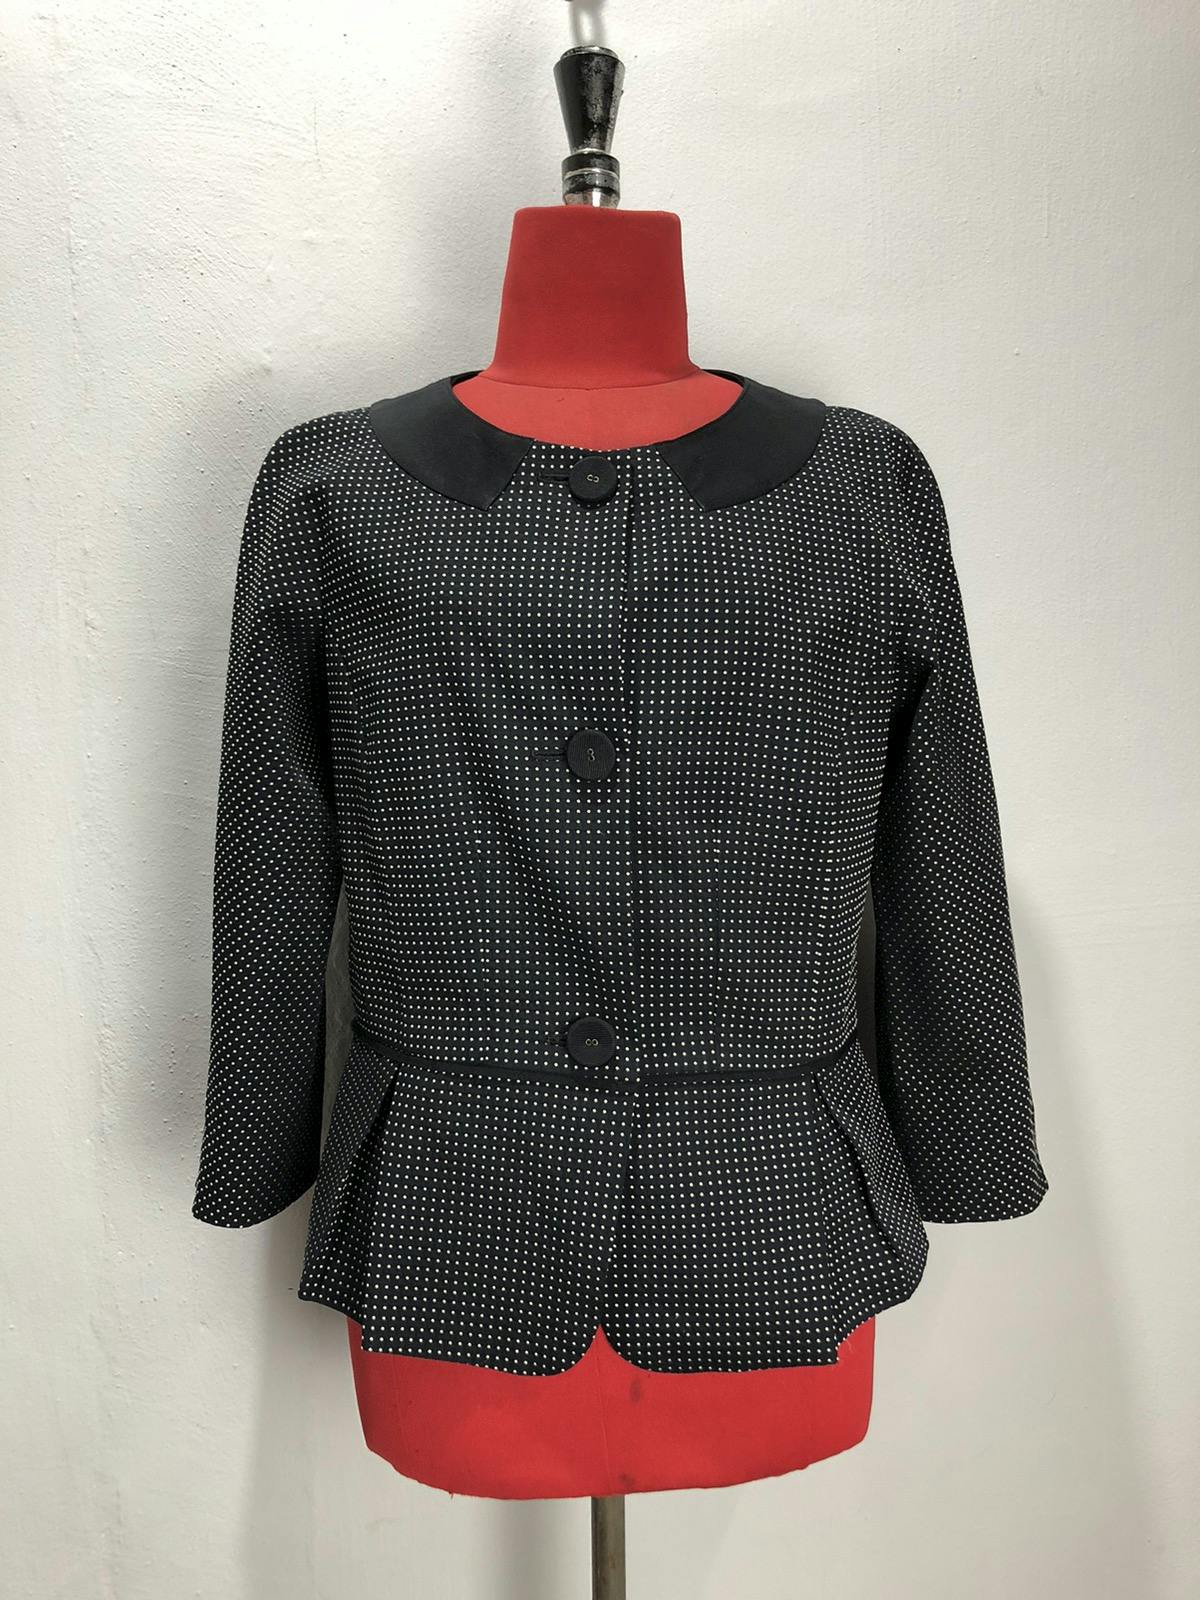 Lanvin blazer/jacket nice design - 5